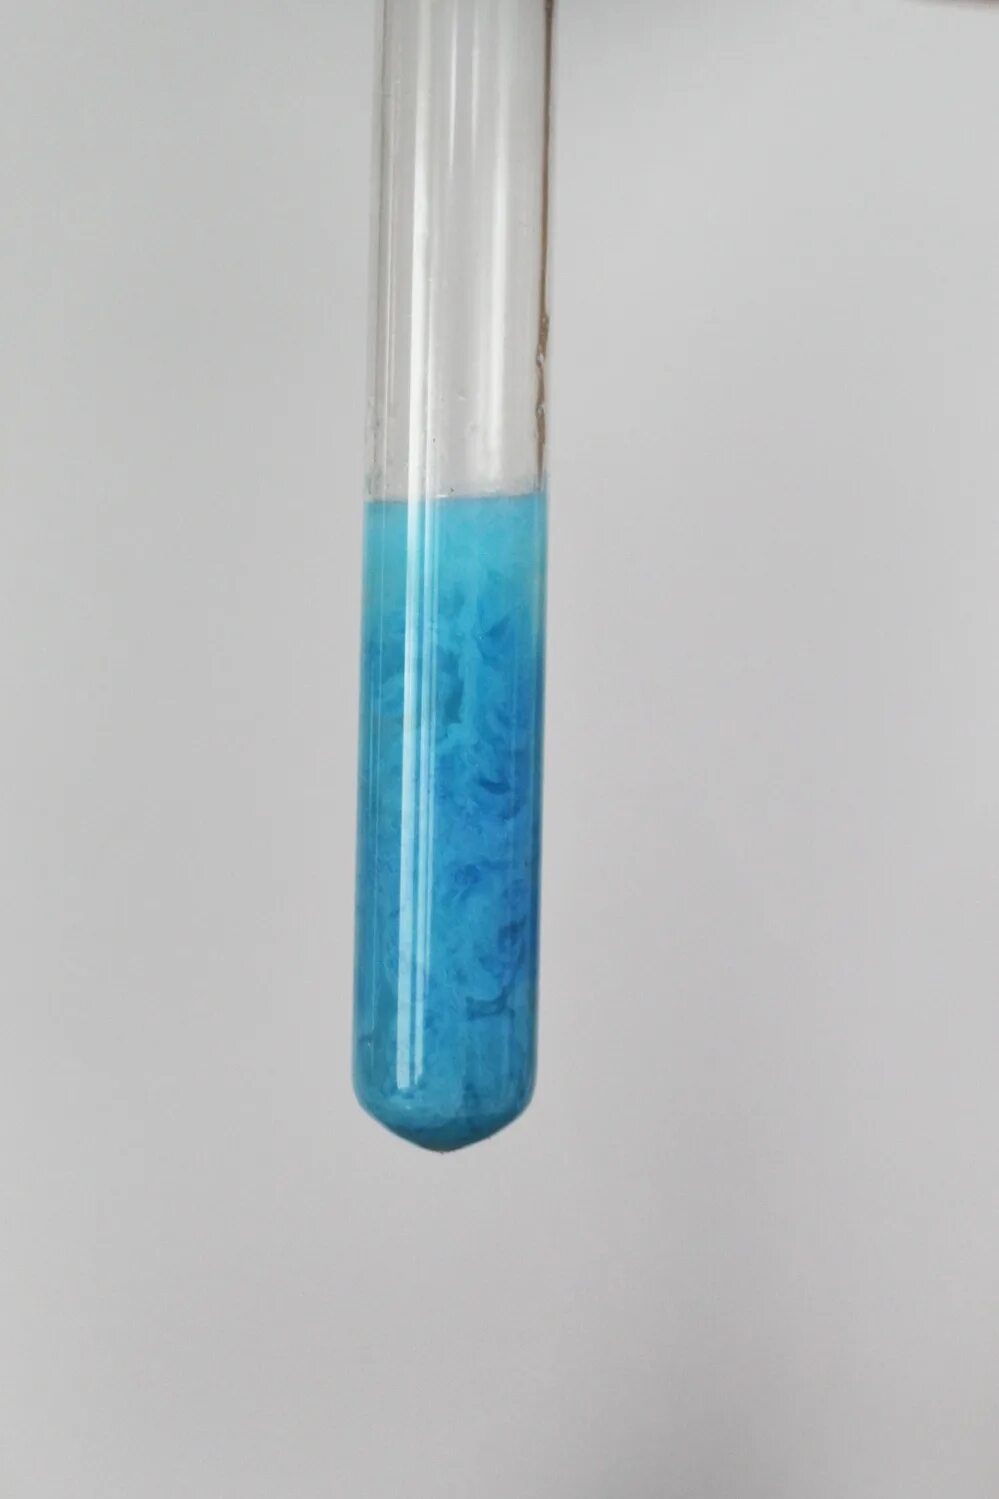 Гидроксида меди среда раствора. Гидроксид меди. Гидроксид меди(II). Гидроксид меди цвет. Молекула гидроксида меди 2.